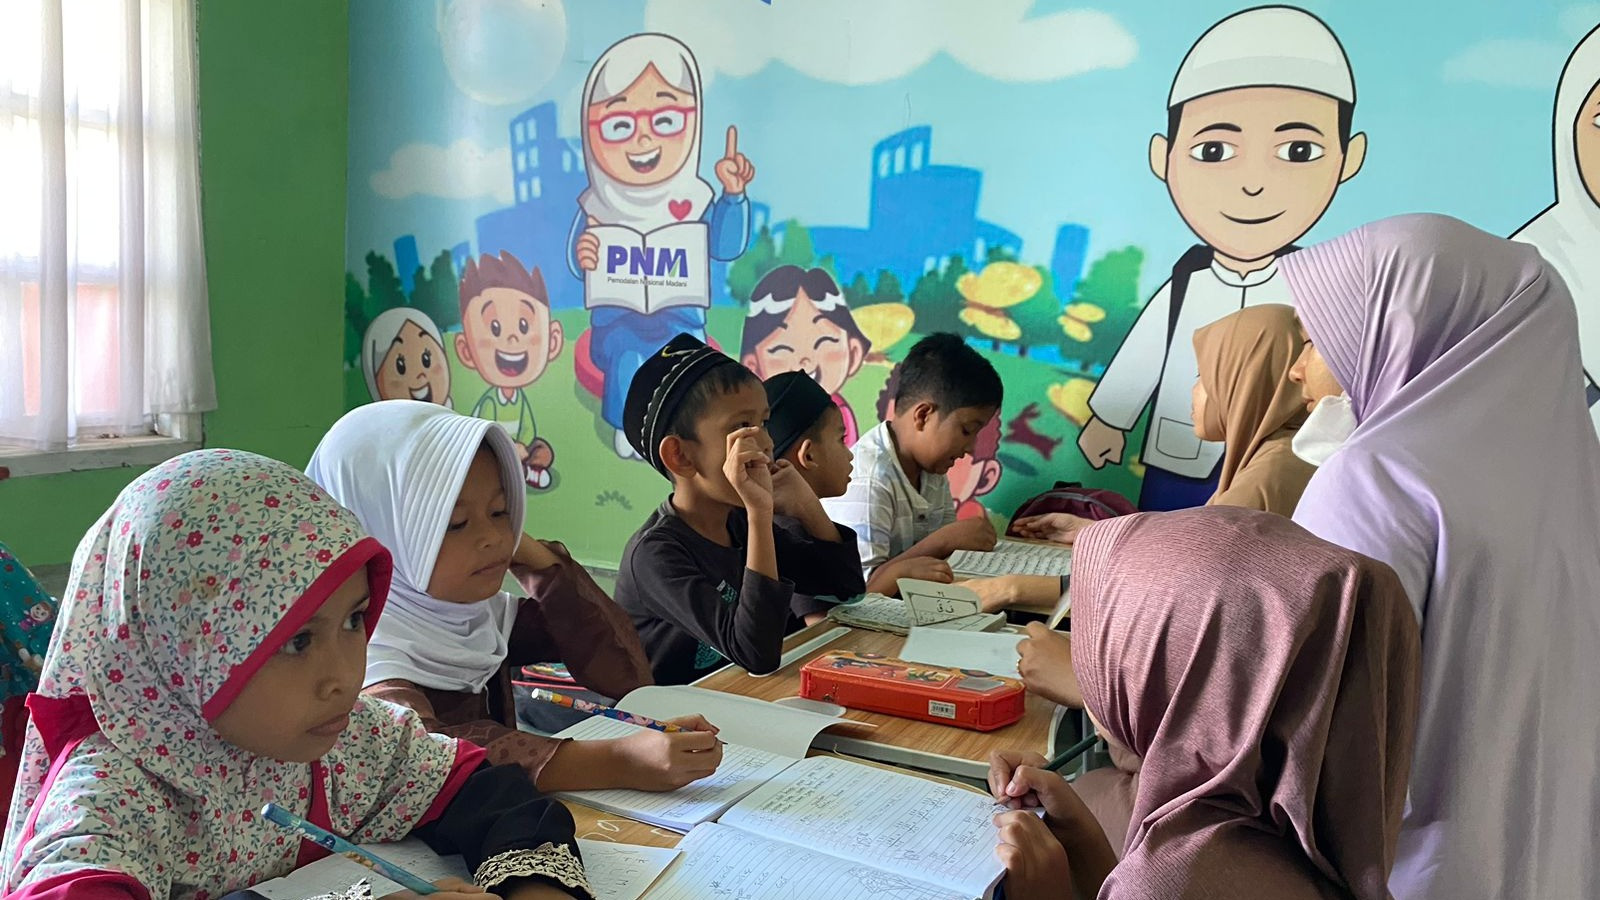 Melihat lebih dekat tantangan yang ada di daerah pelosok Indonesia, masih banyak siswa-siswi yang terpaksa berhenti belajar di masa pandemi.